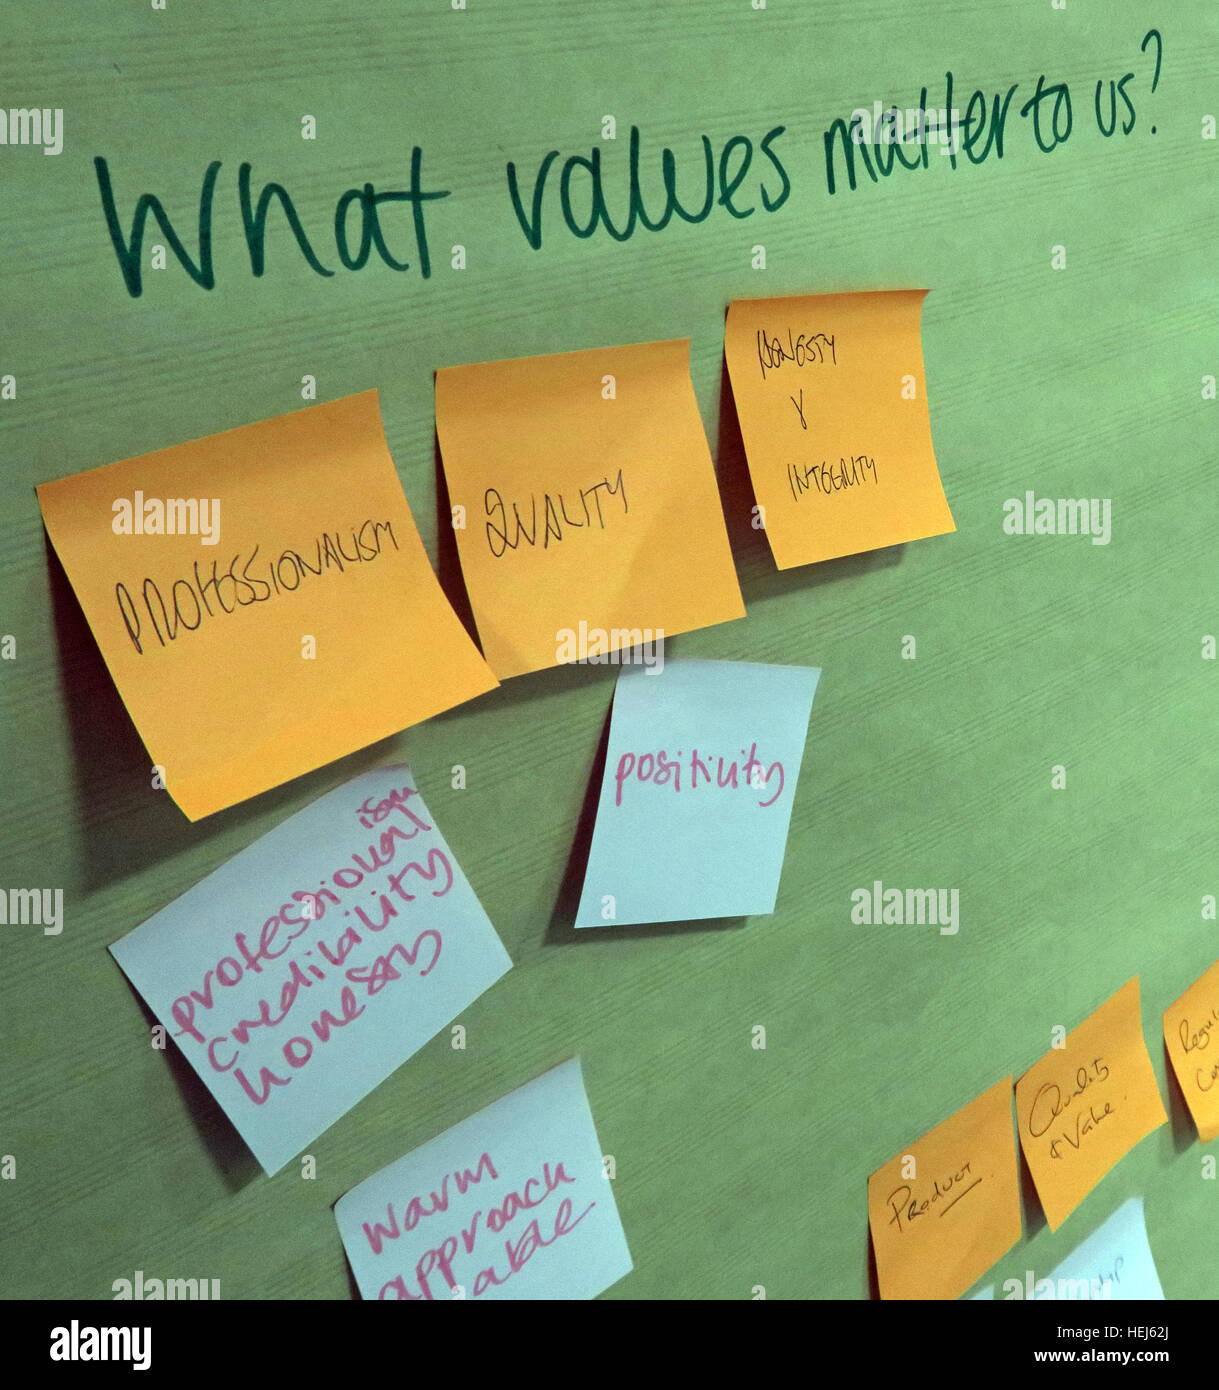 Strategia e valori di brainstorming formazione office team building sessione - i valori in questione per noi? Foto Stock